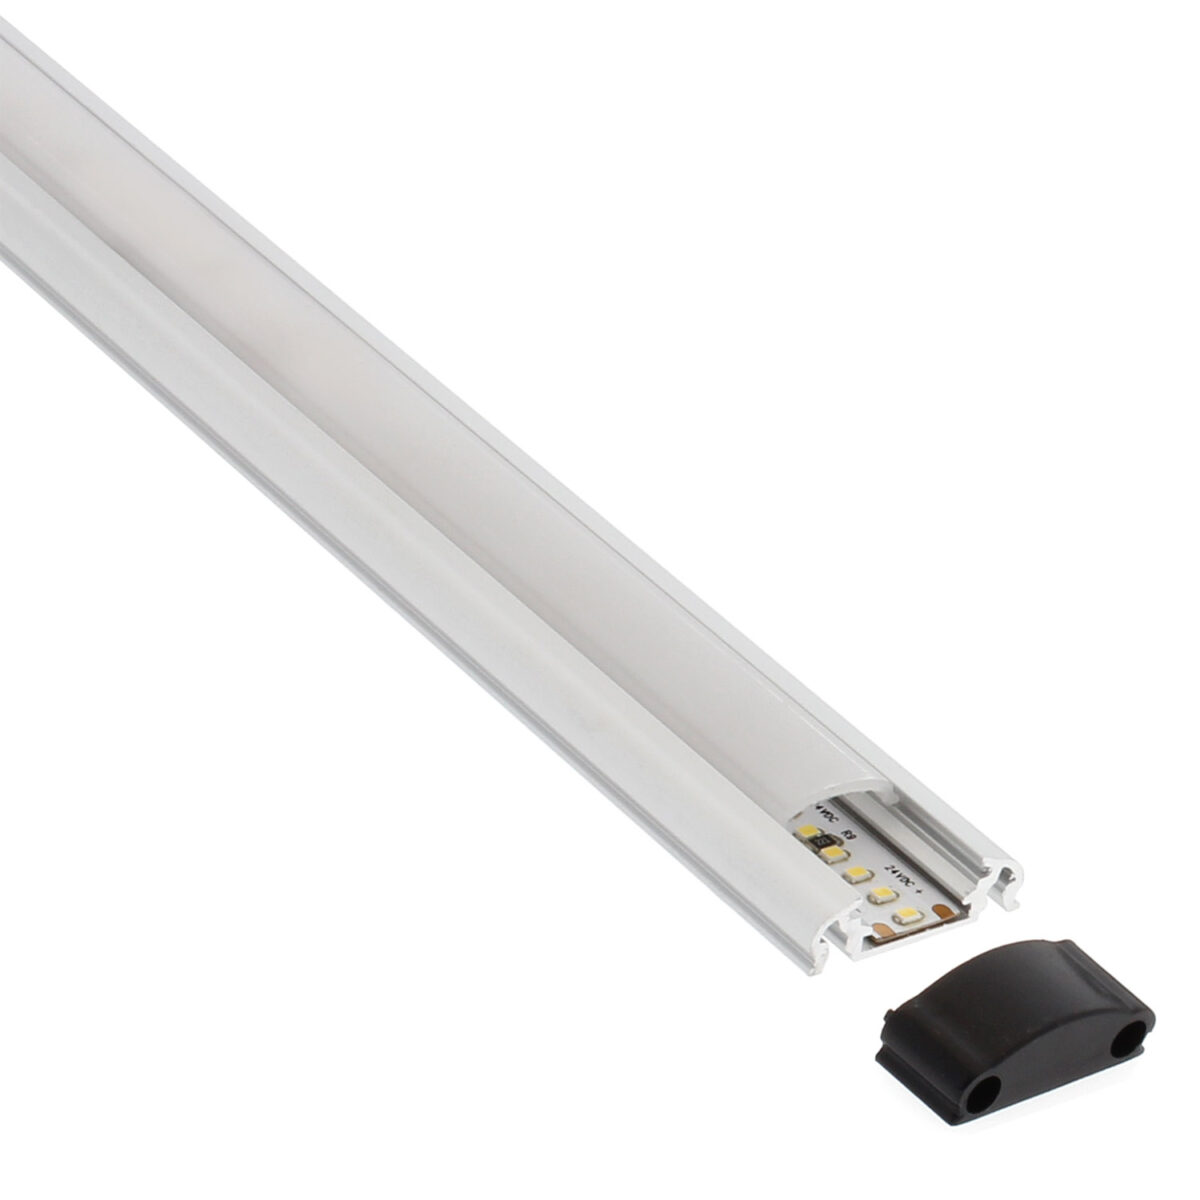 KIT - Perfil aluminio LEK para tiras LED